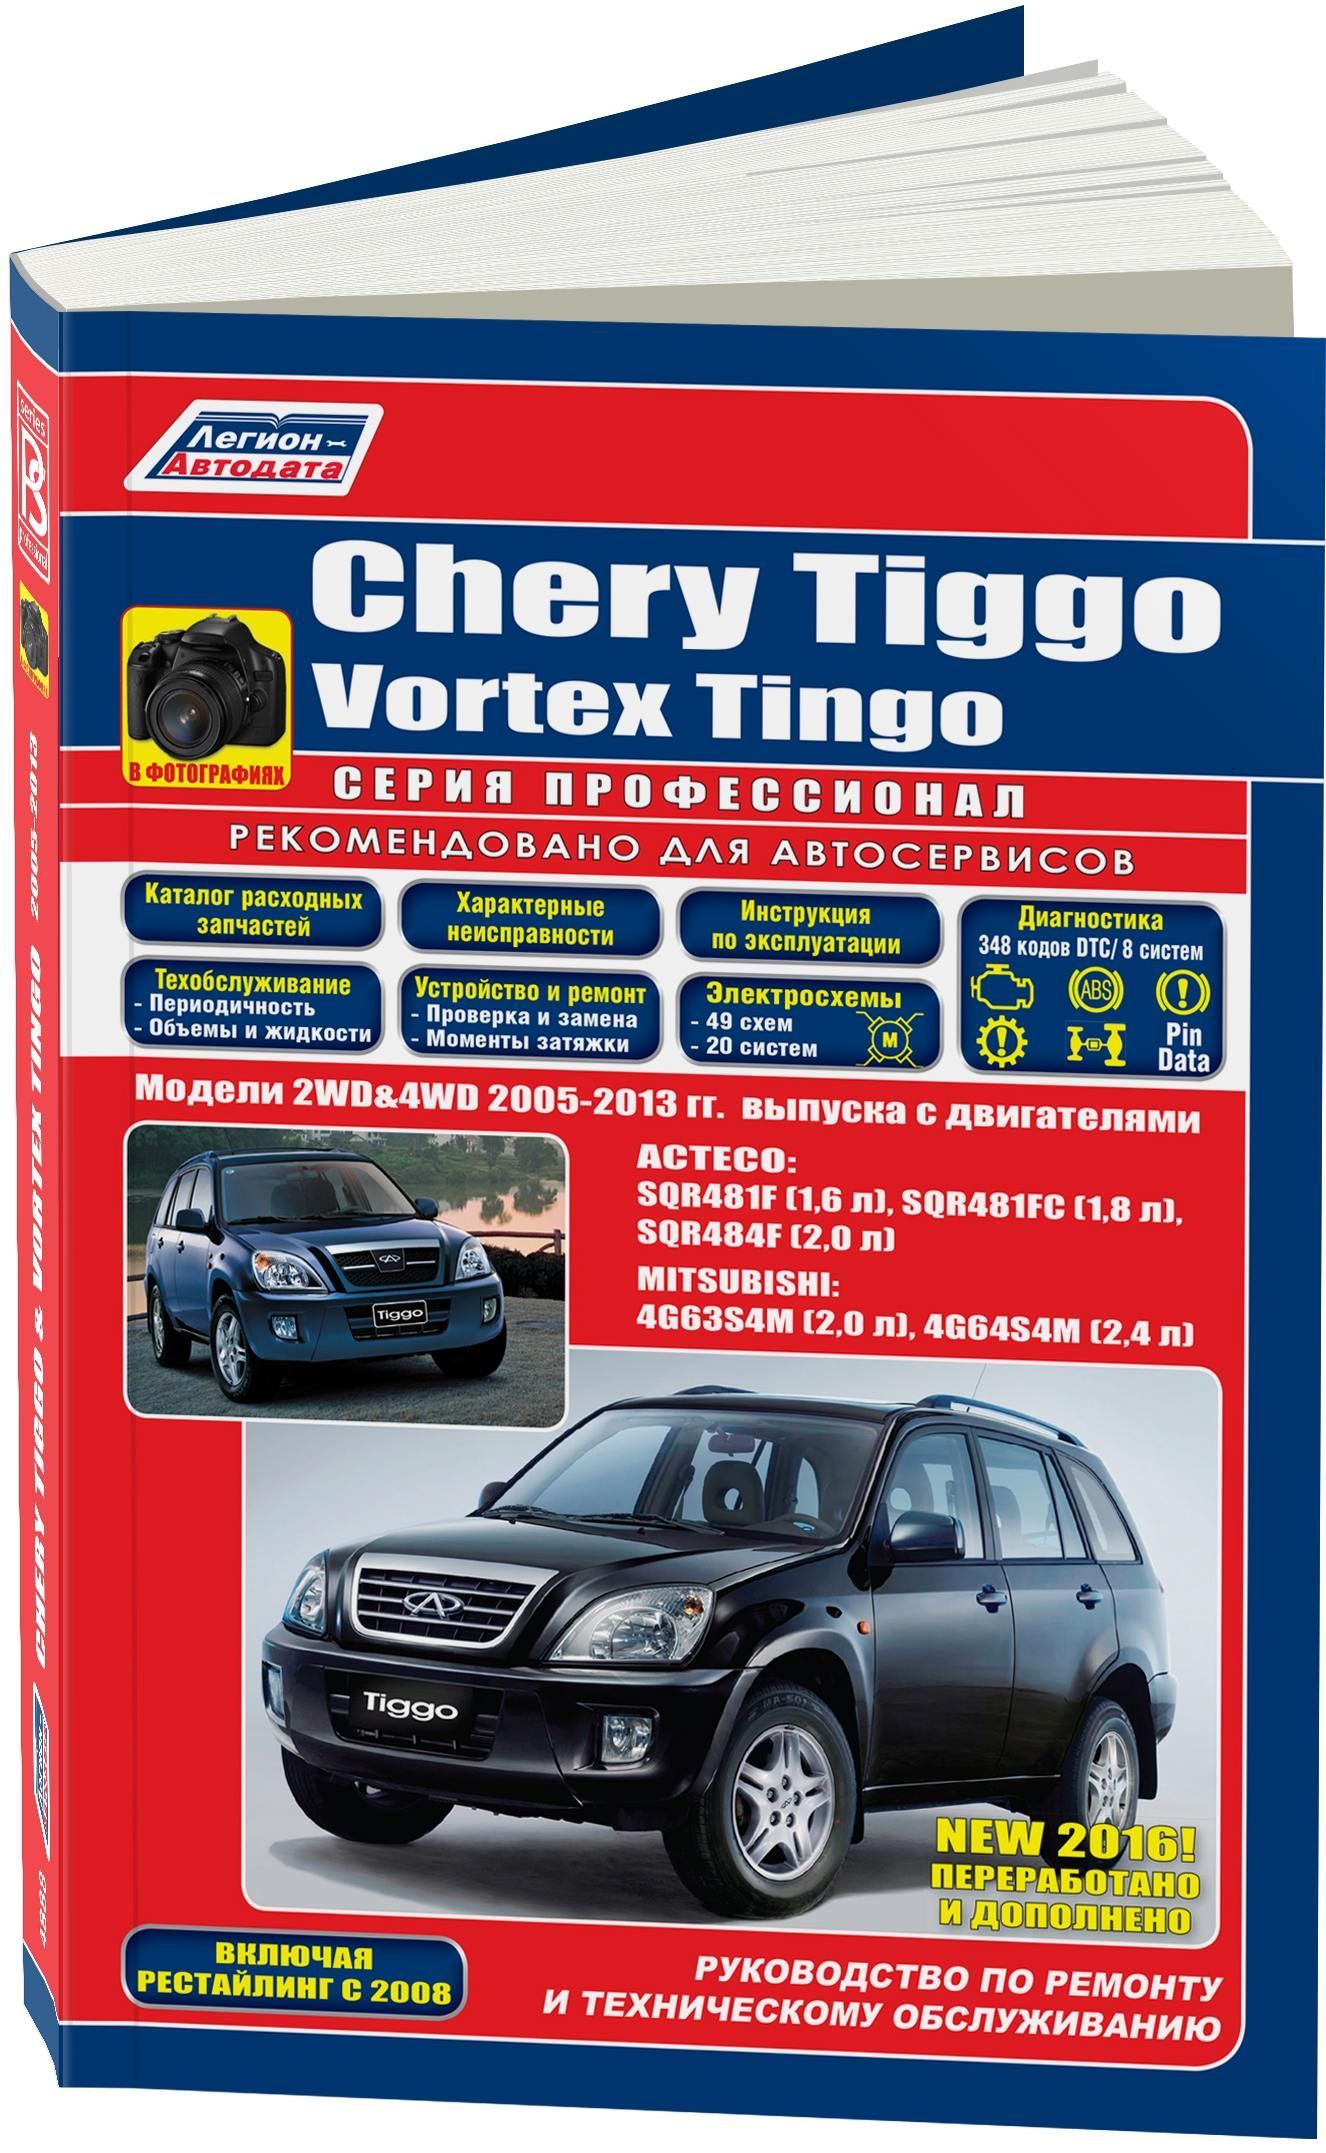 Книга: CHERY TIGGO / VORTEX TINGO (б) 2005-2013 г.в., рем., экспл., то, Ч/Б. фото., сер.ПРОФ. | Легион-Aвтодата